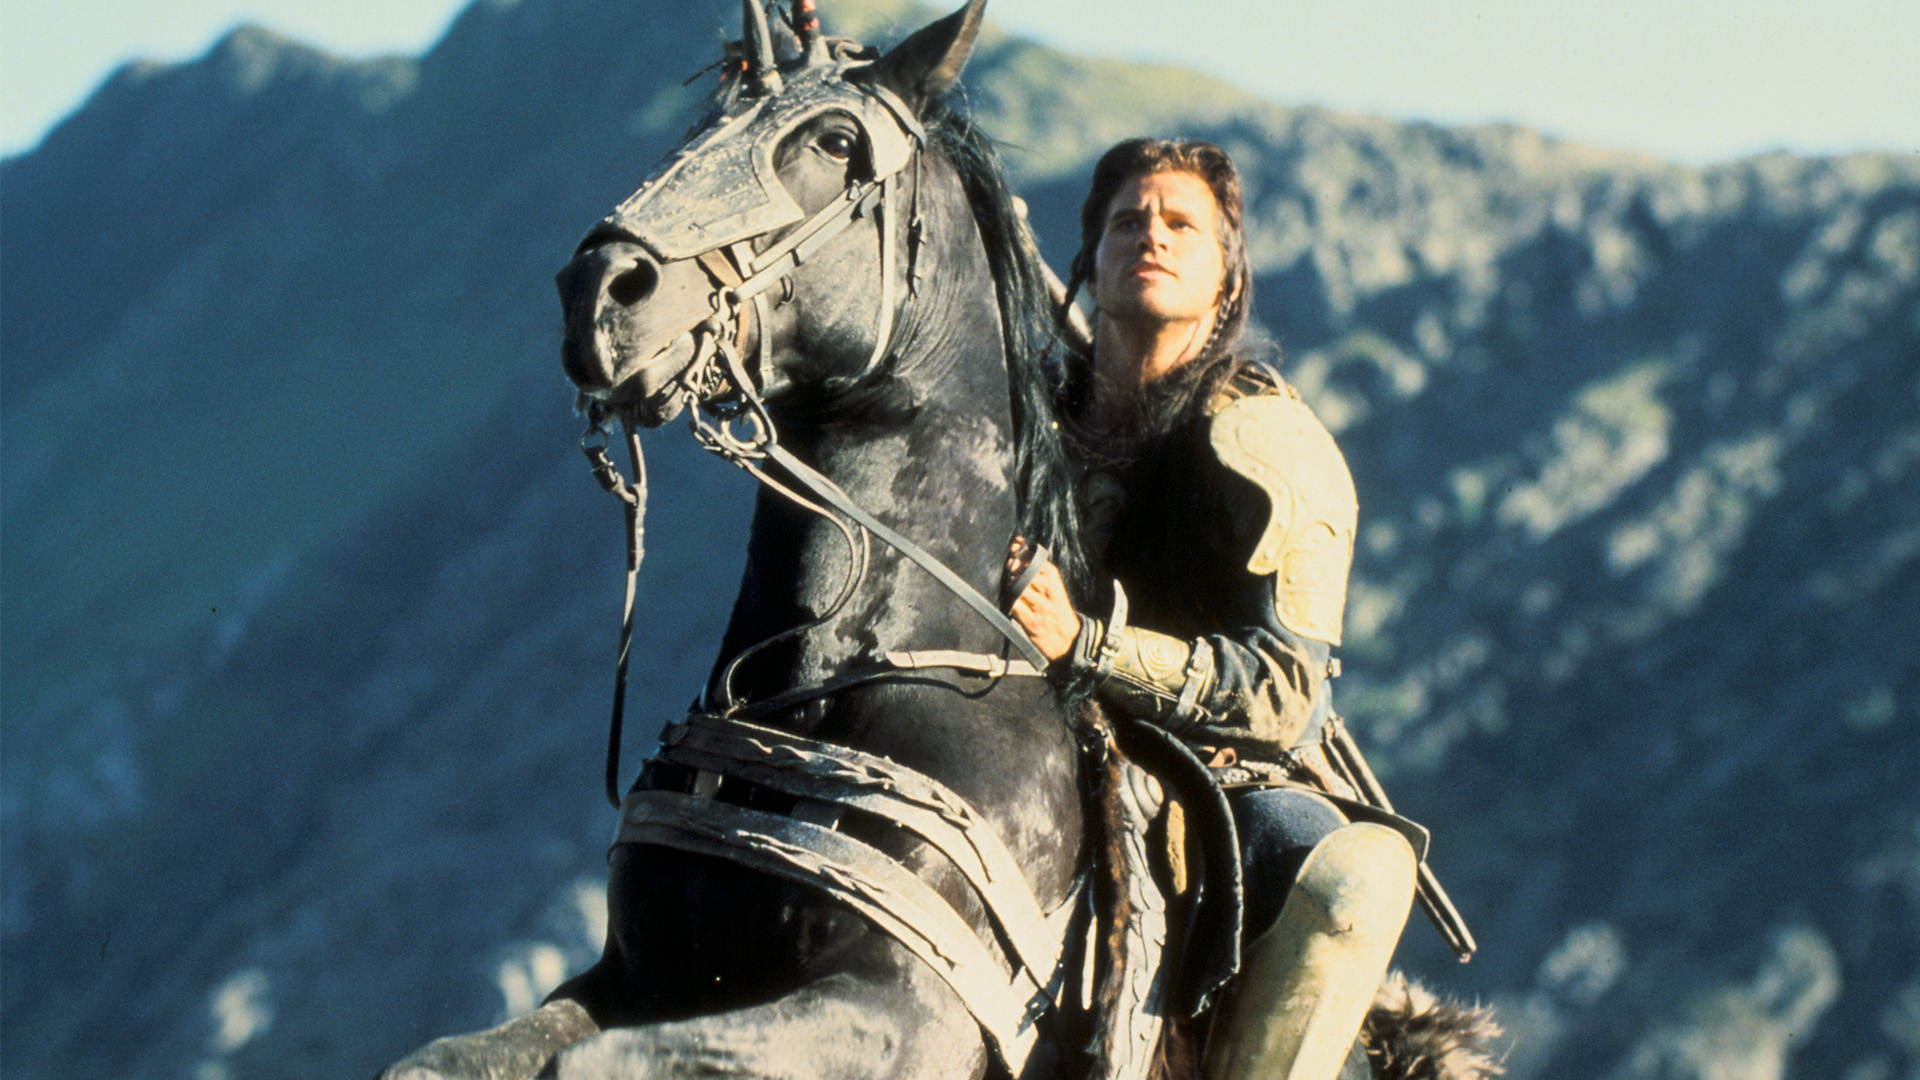 Madmartigan on his horse